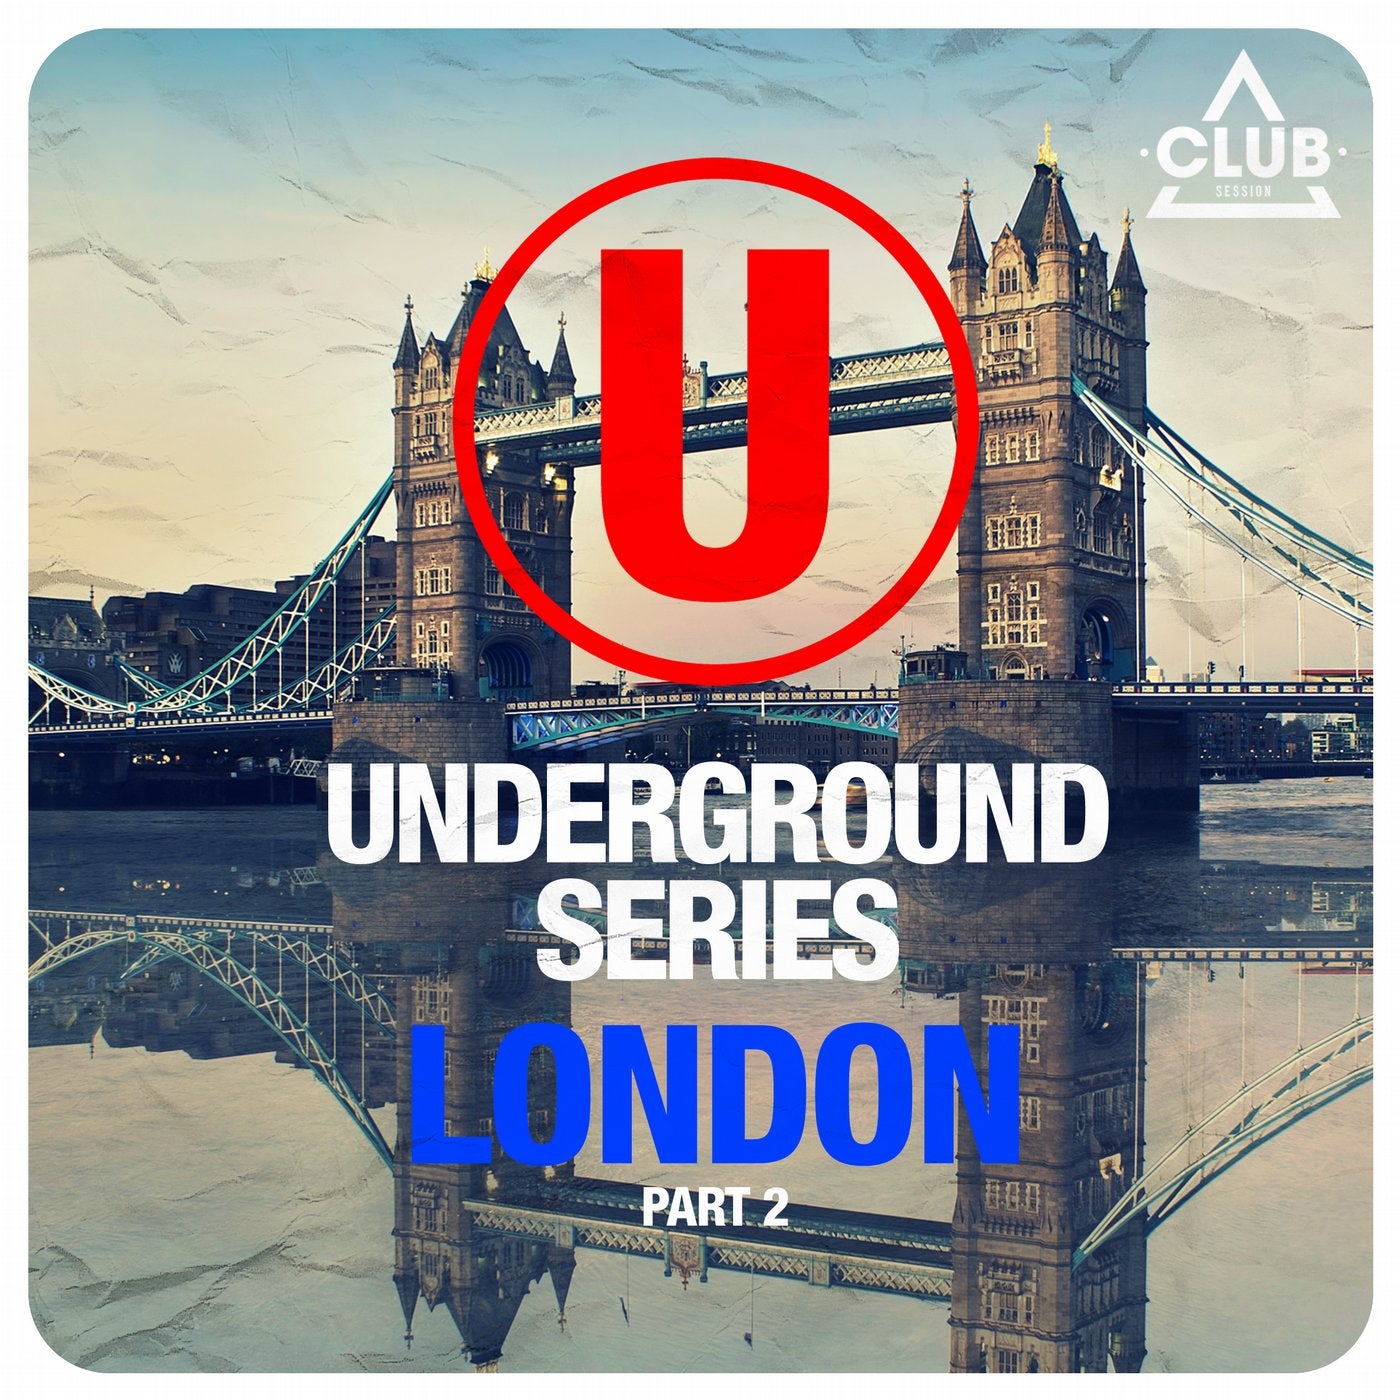 Underground Series London Part 2